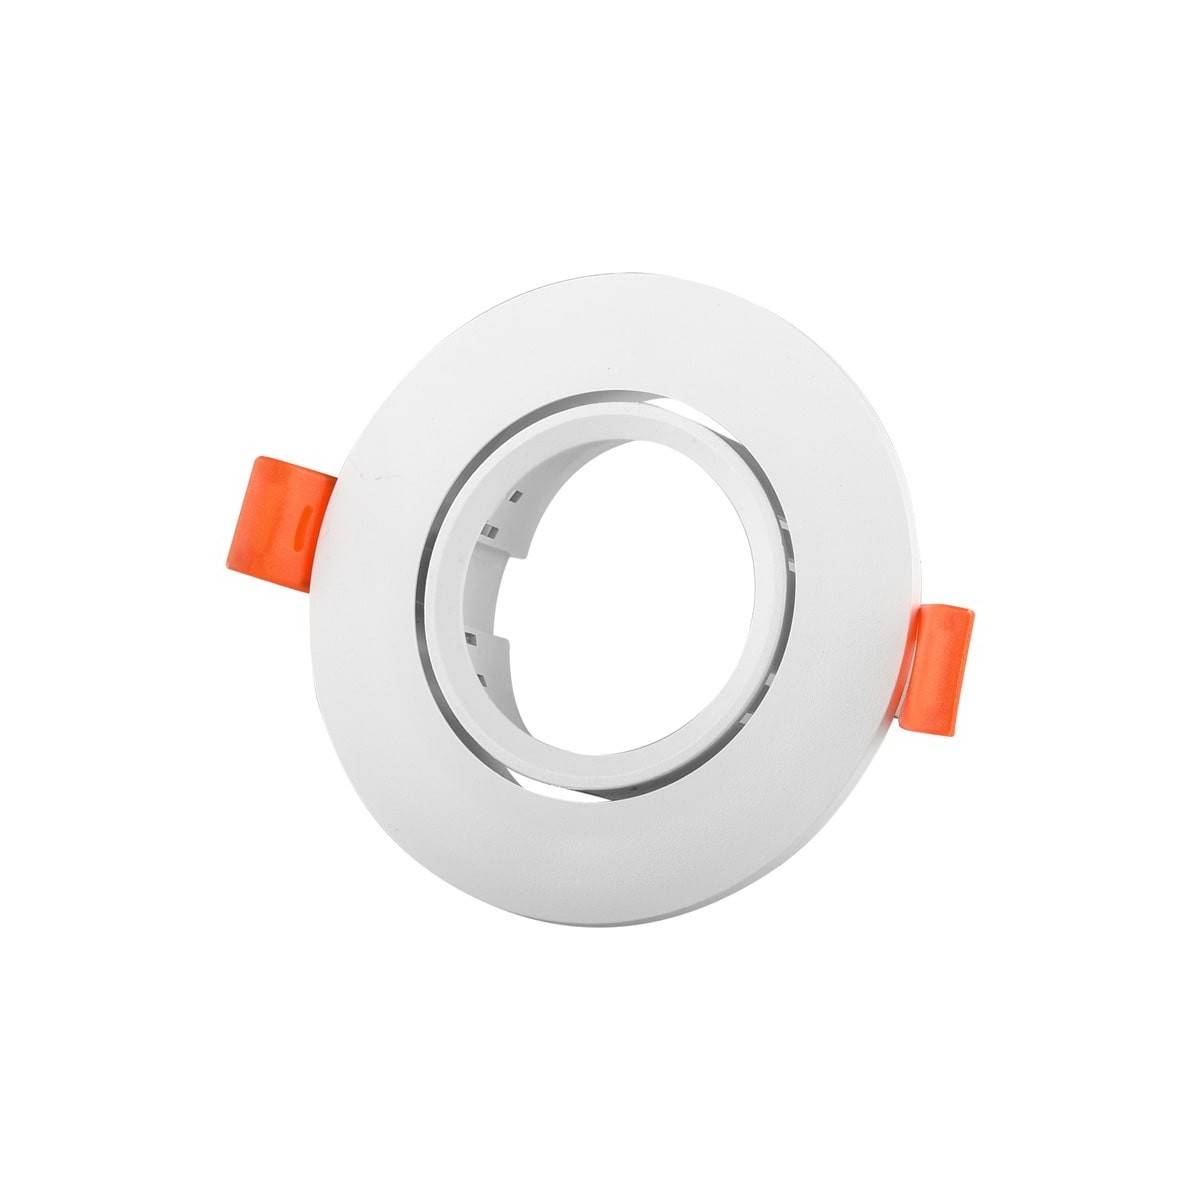 Aro downlight empotrable circular basculante GU10, MR16